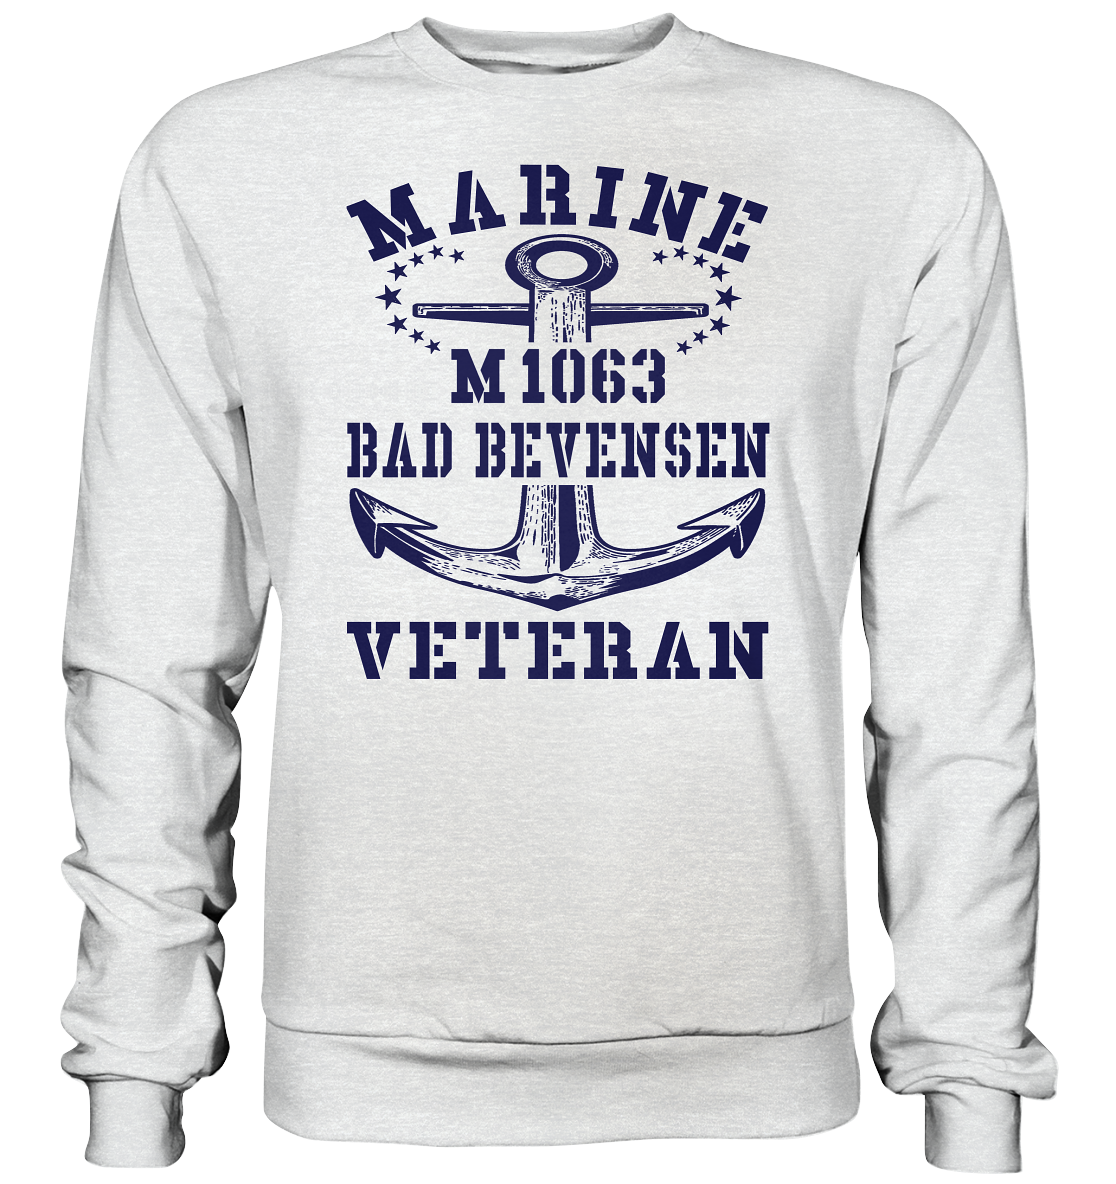 Mij.-Boot M1063 BAD BEVENSEN Marine Veteran - Premium Sweatshirt